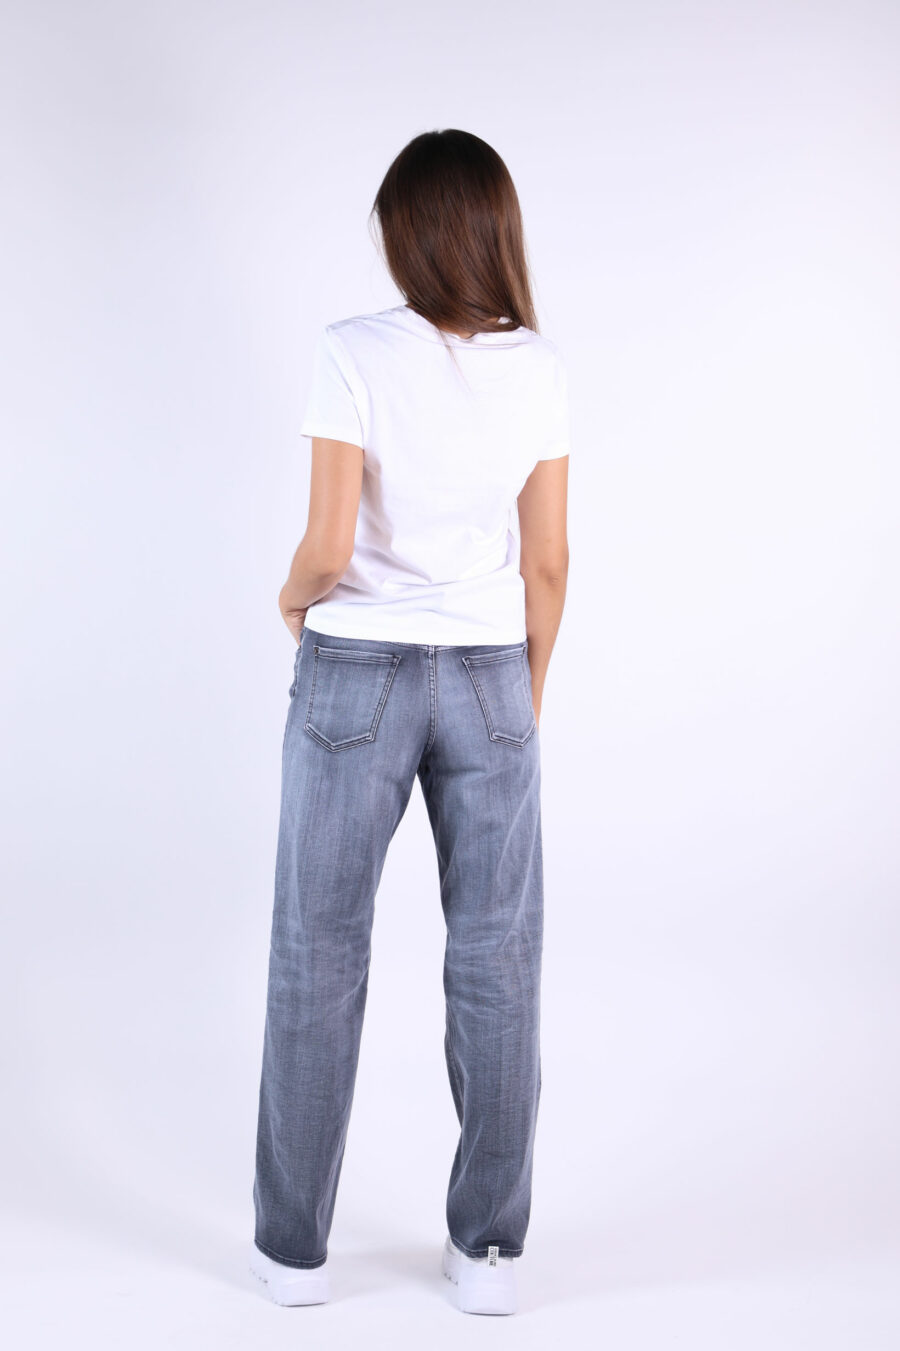 Jeans "San Diego jean" schwarz getragen - 361223054662201936 2